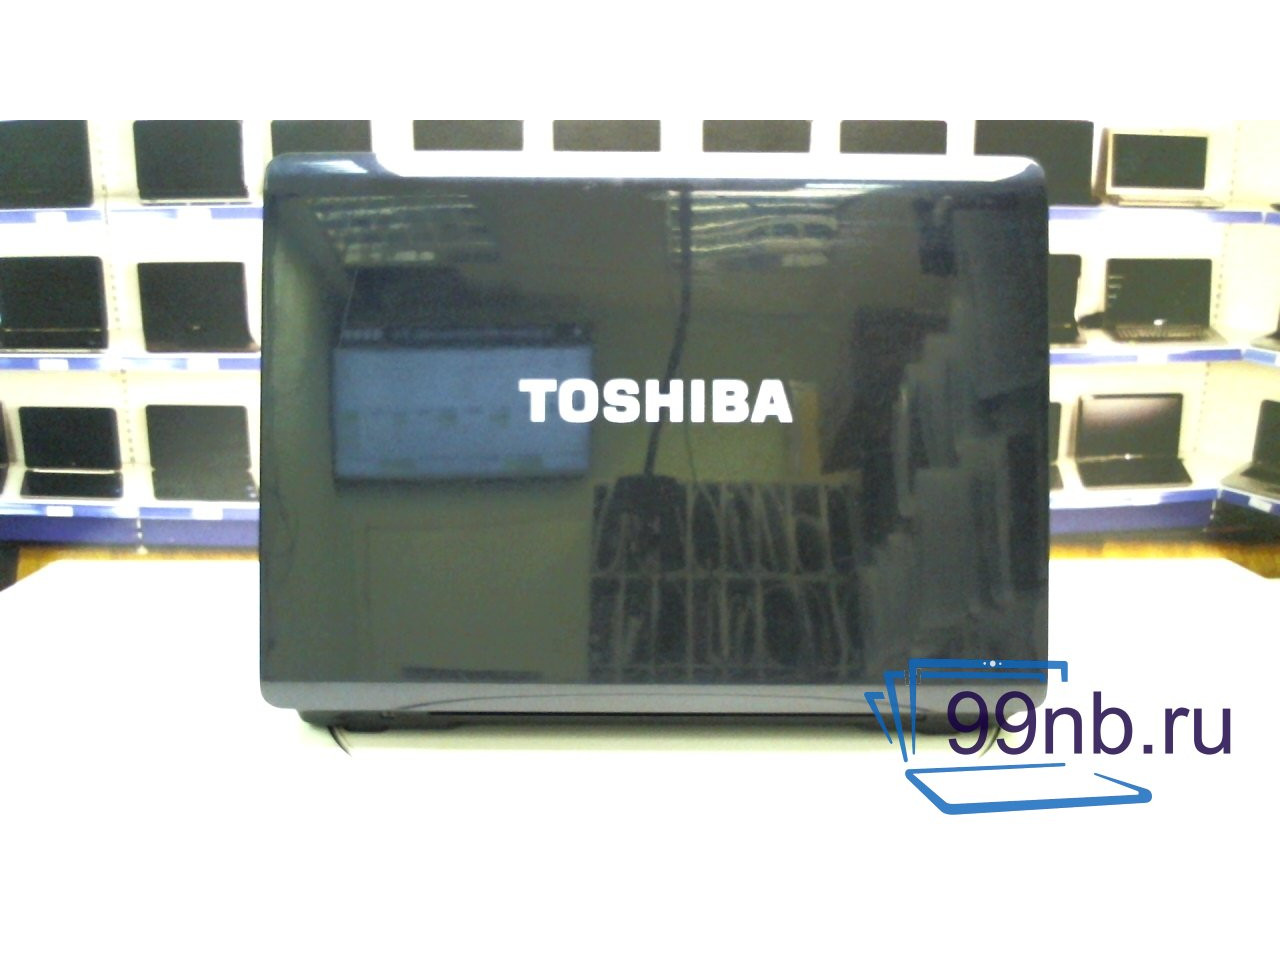 Toshiba satellite p200-14o